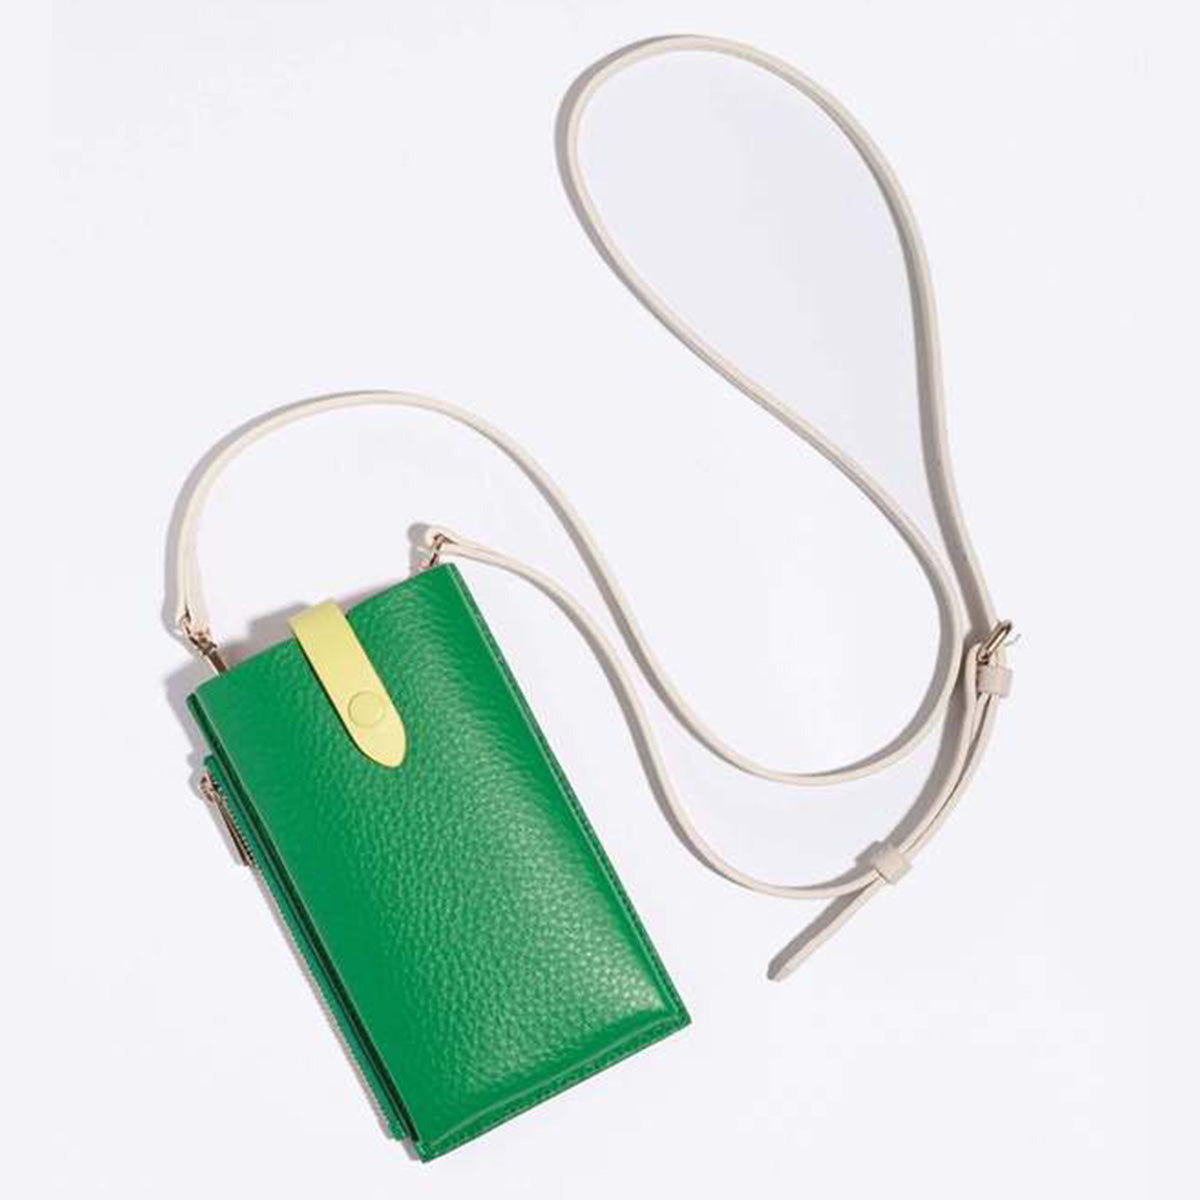 Jw Pei Quinn Phone Bag with Strap